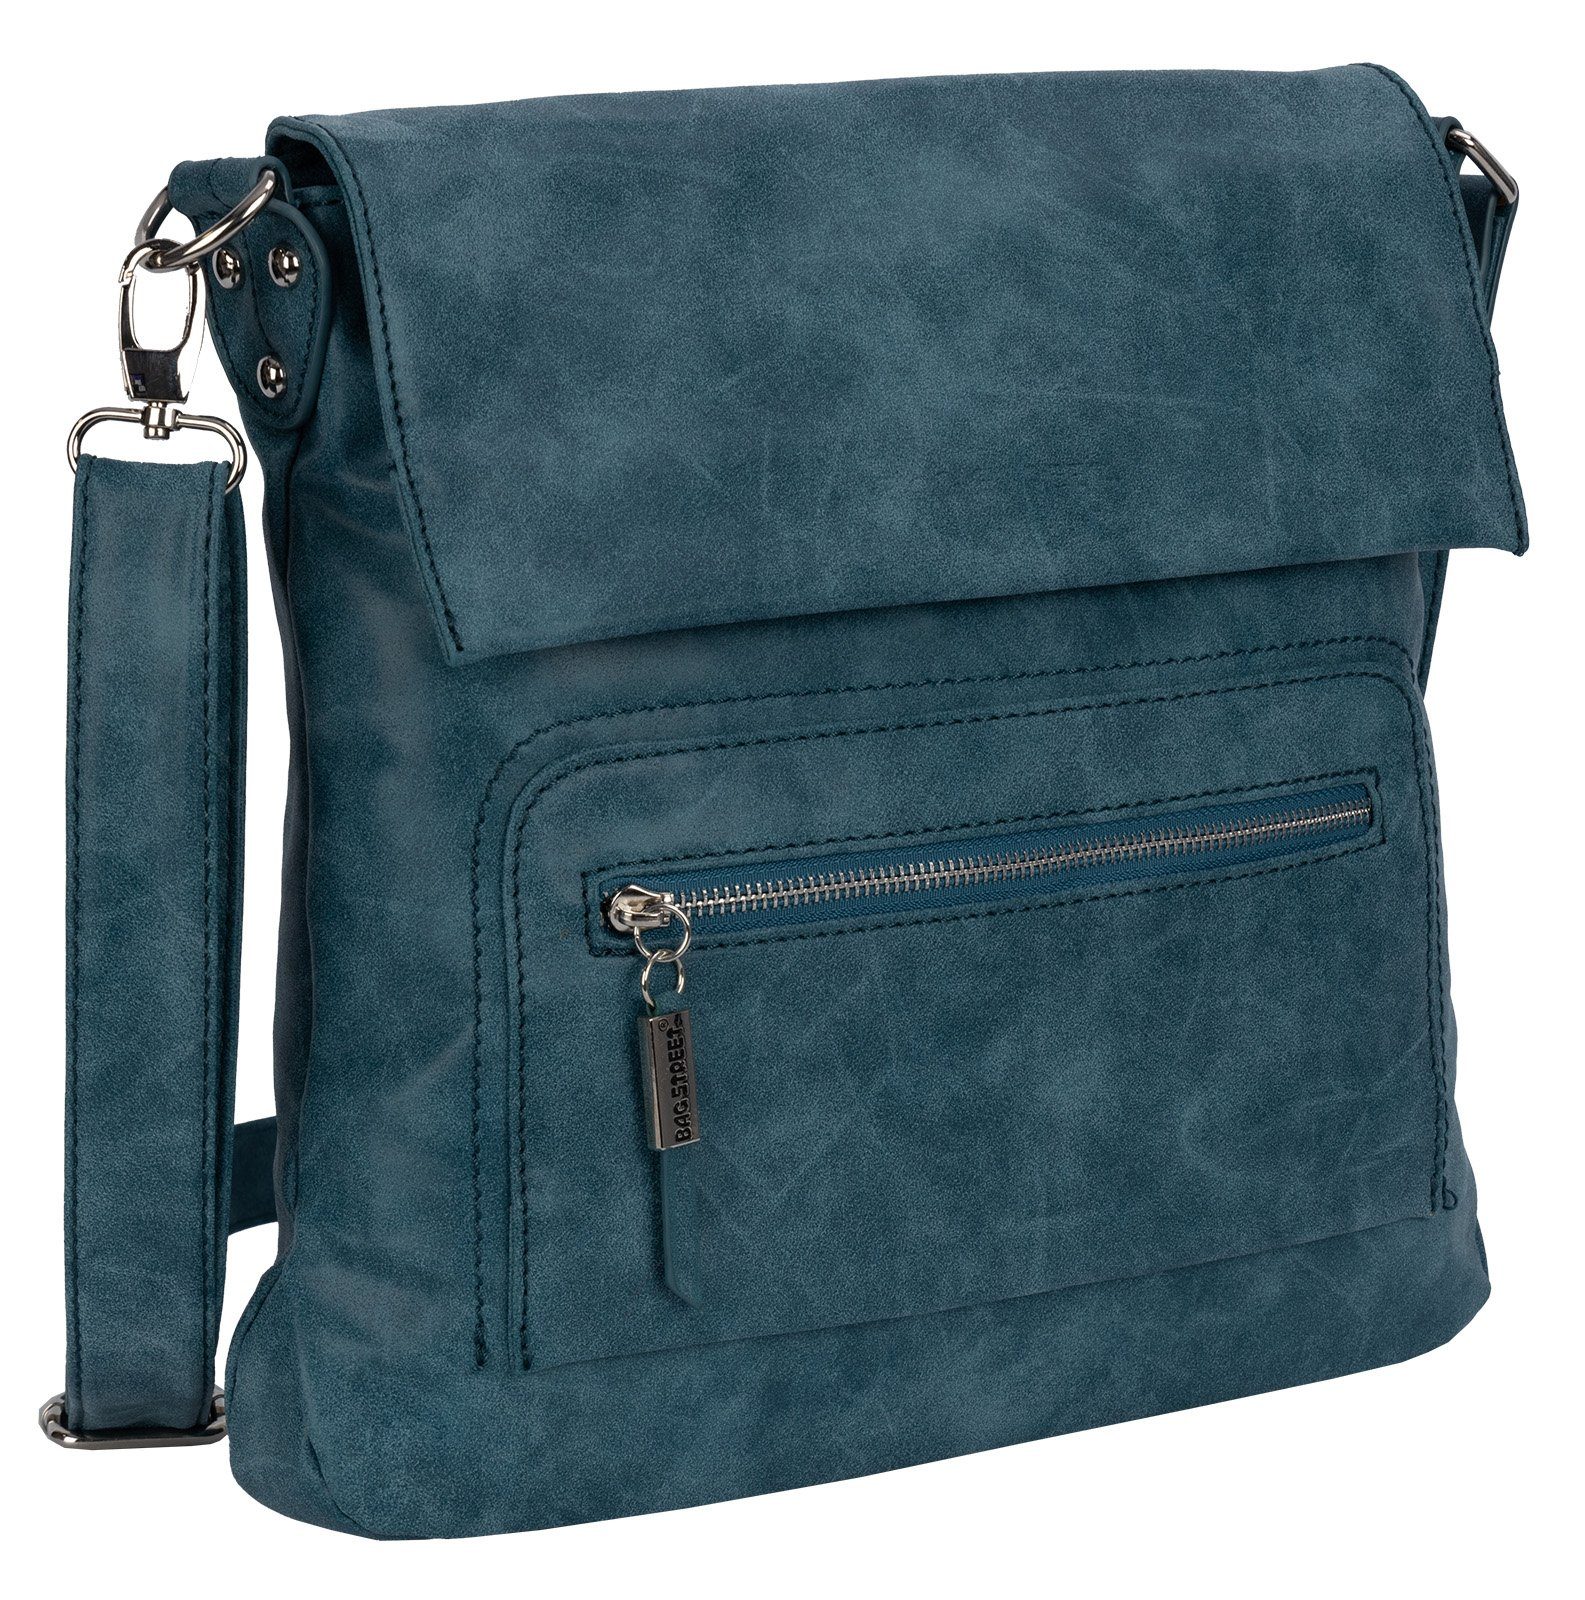 BAG Umhängetasche STREET Umhängetasche Damentasche Handtasche Schultertasche, als BLAU tragbar Street Bag Schultertasche Schlüsseltasche T0103,